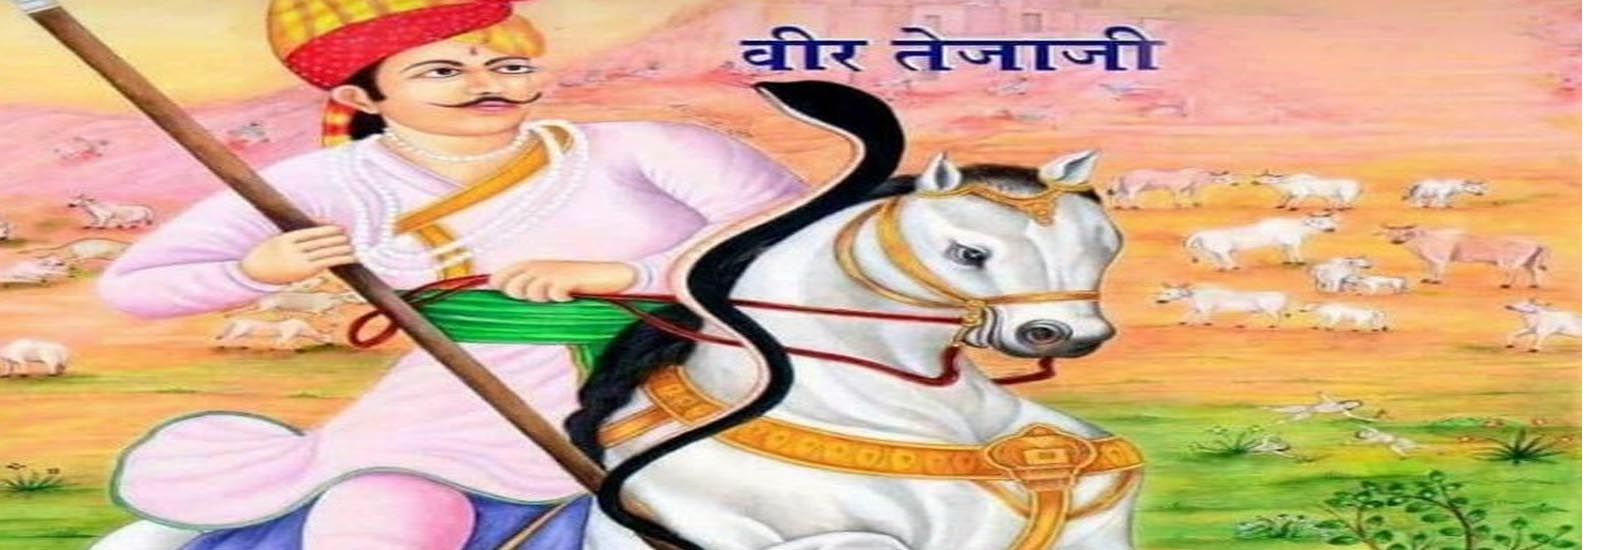 dhara pr para hindi poem